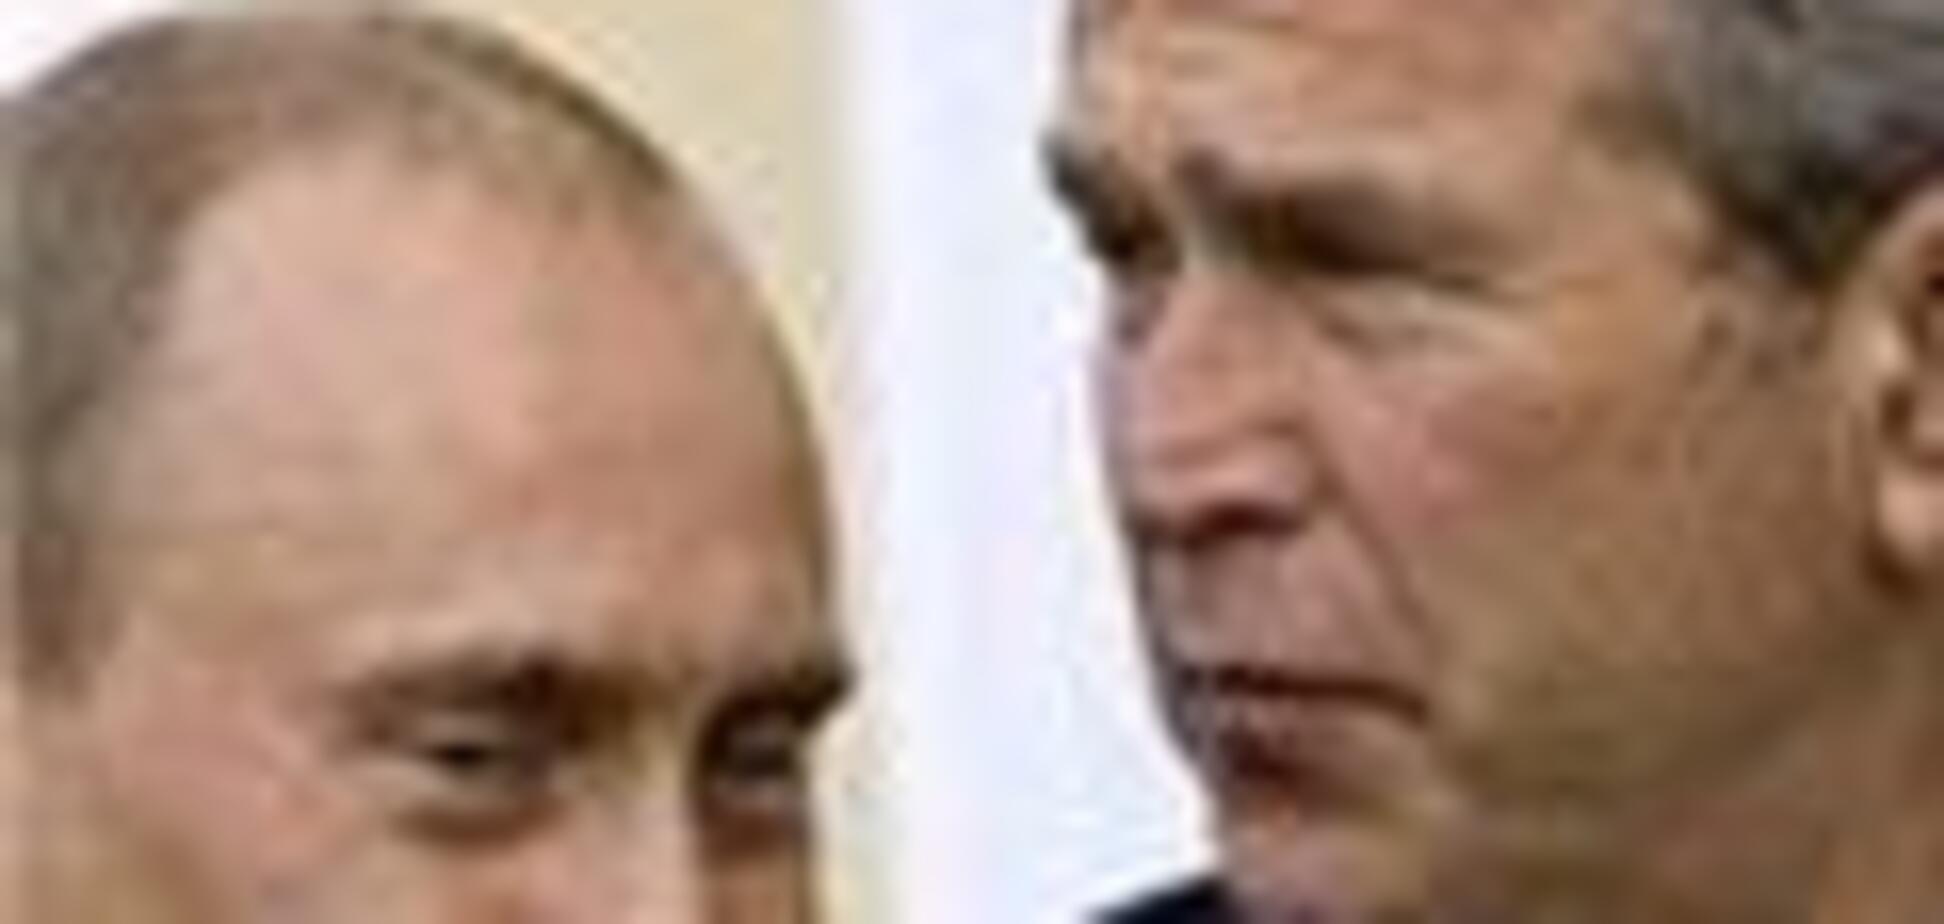 Путін і Буш найвпливовіші